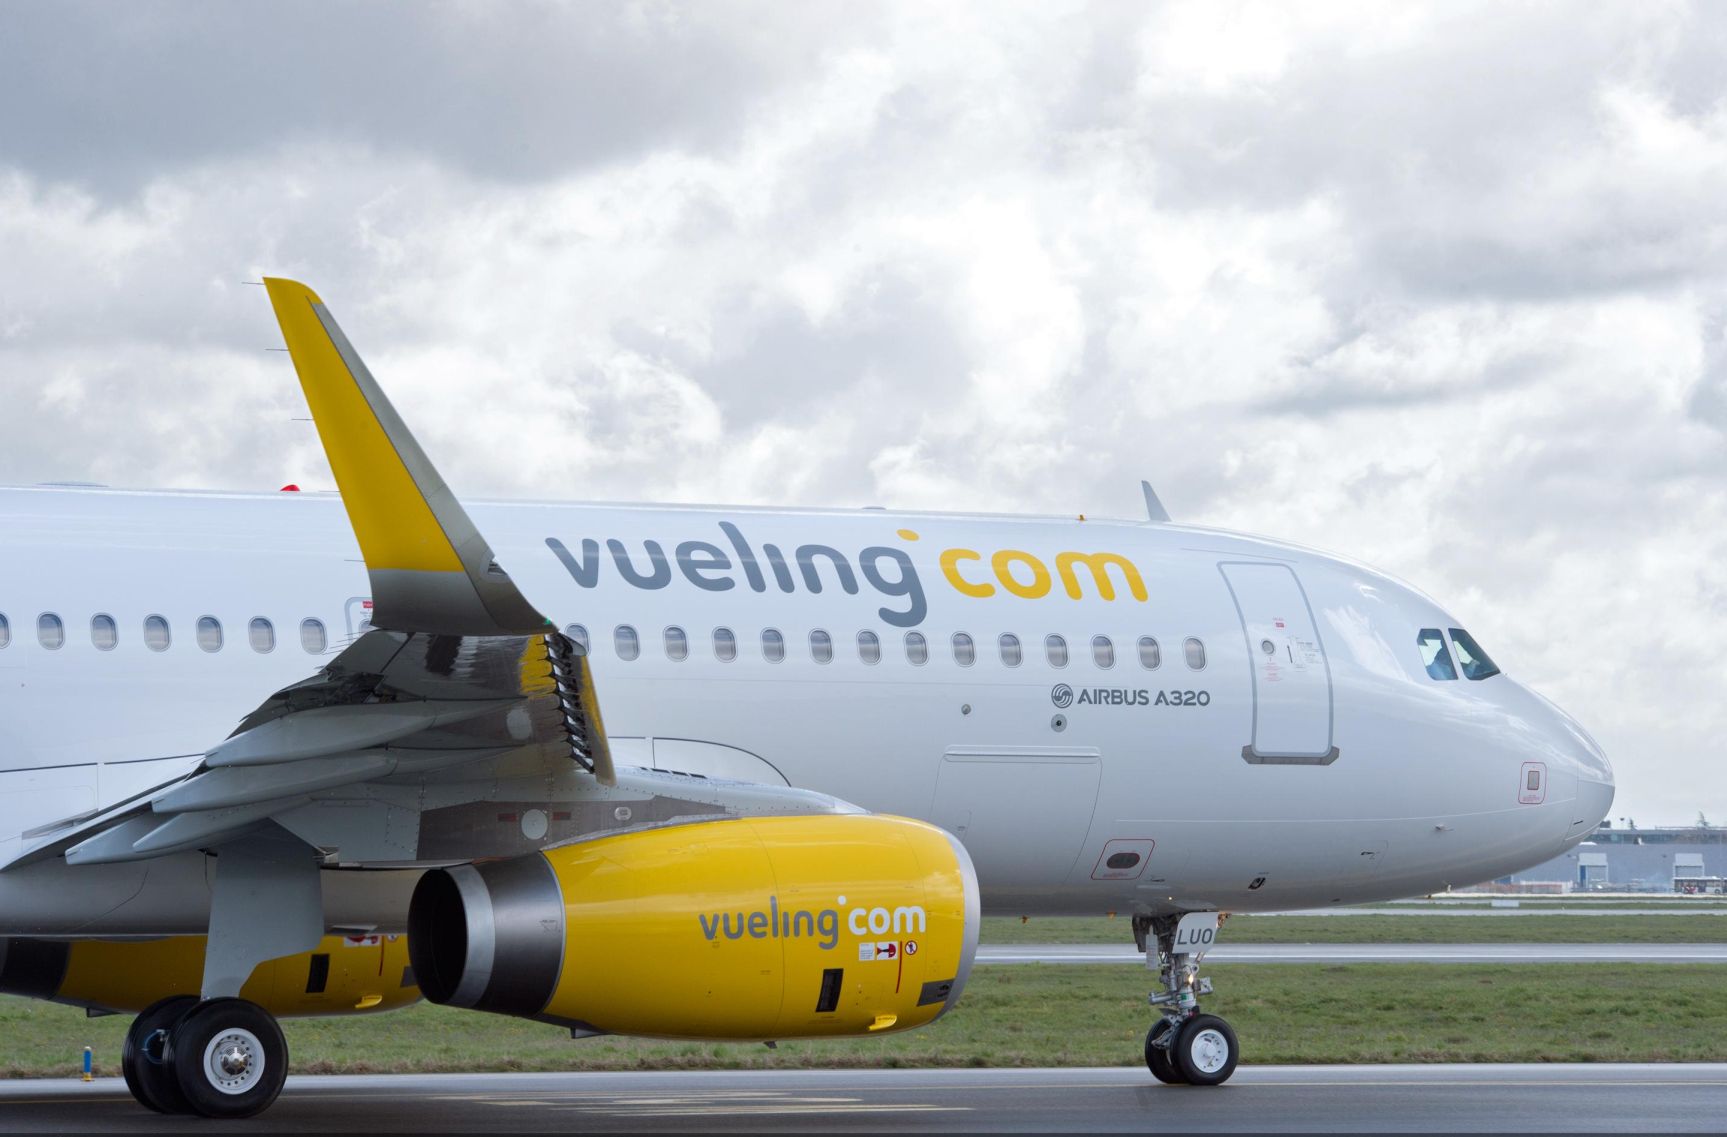 Vueling-gép: Barcelonában egy 320-as nem tudott elstartolni